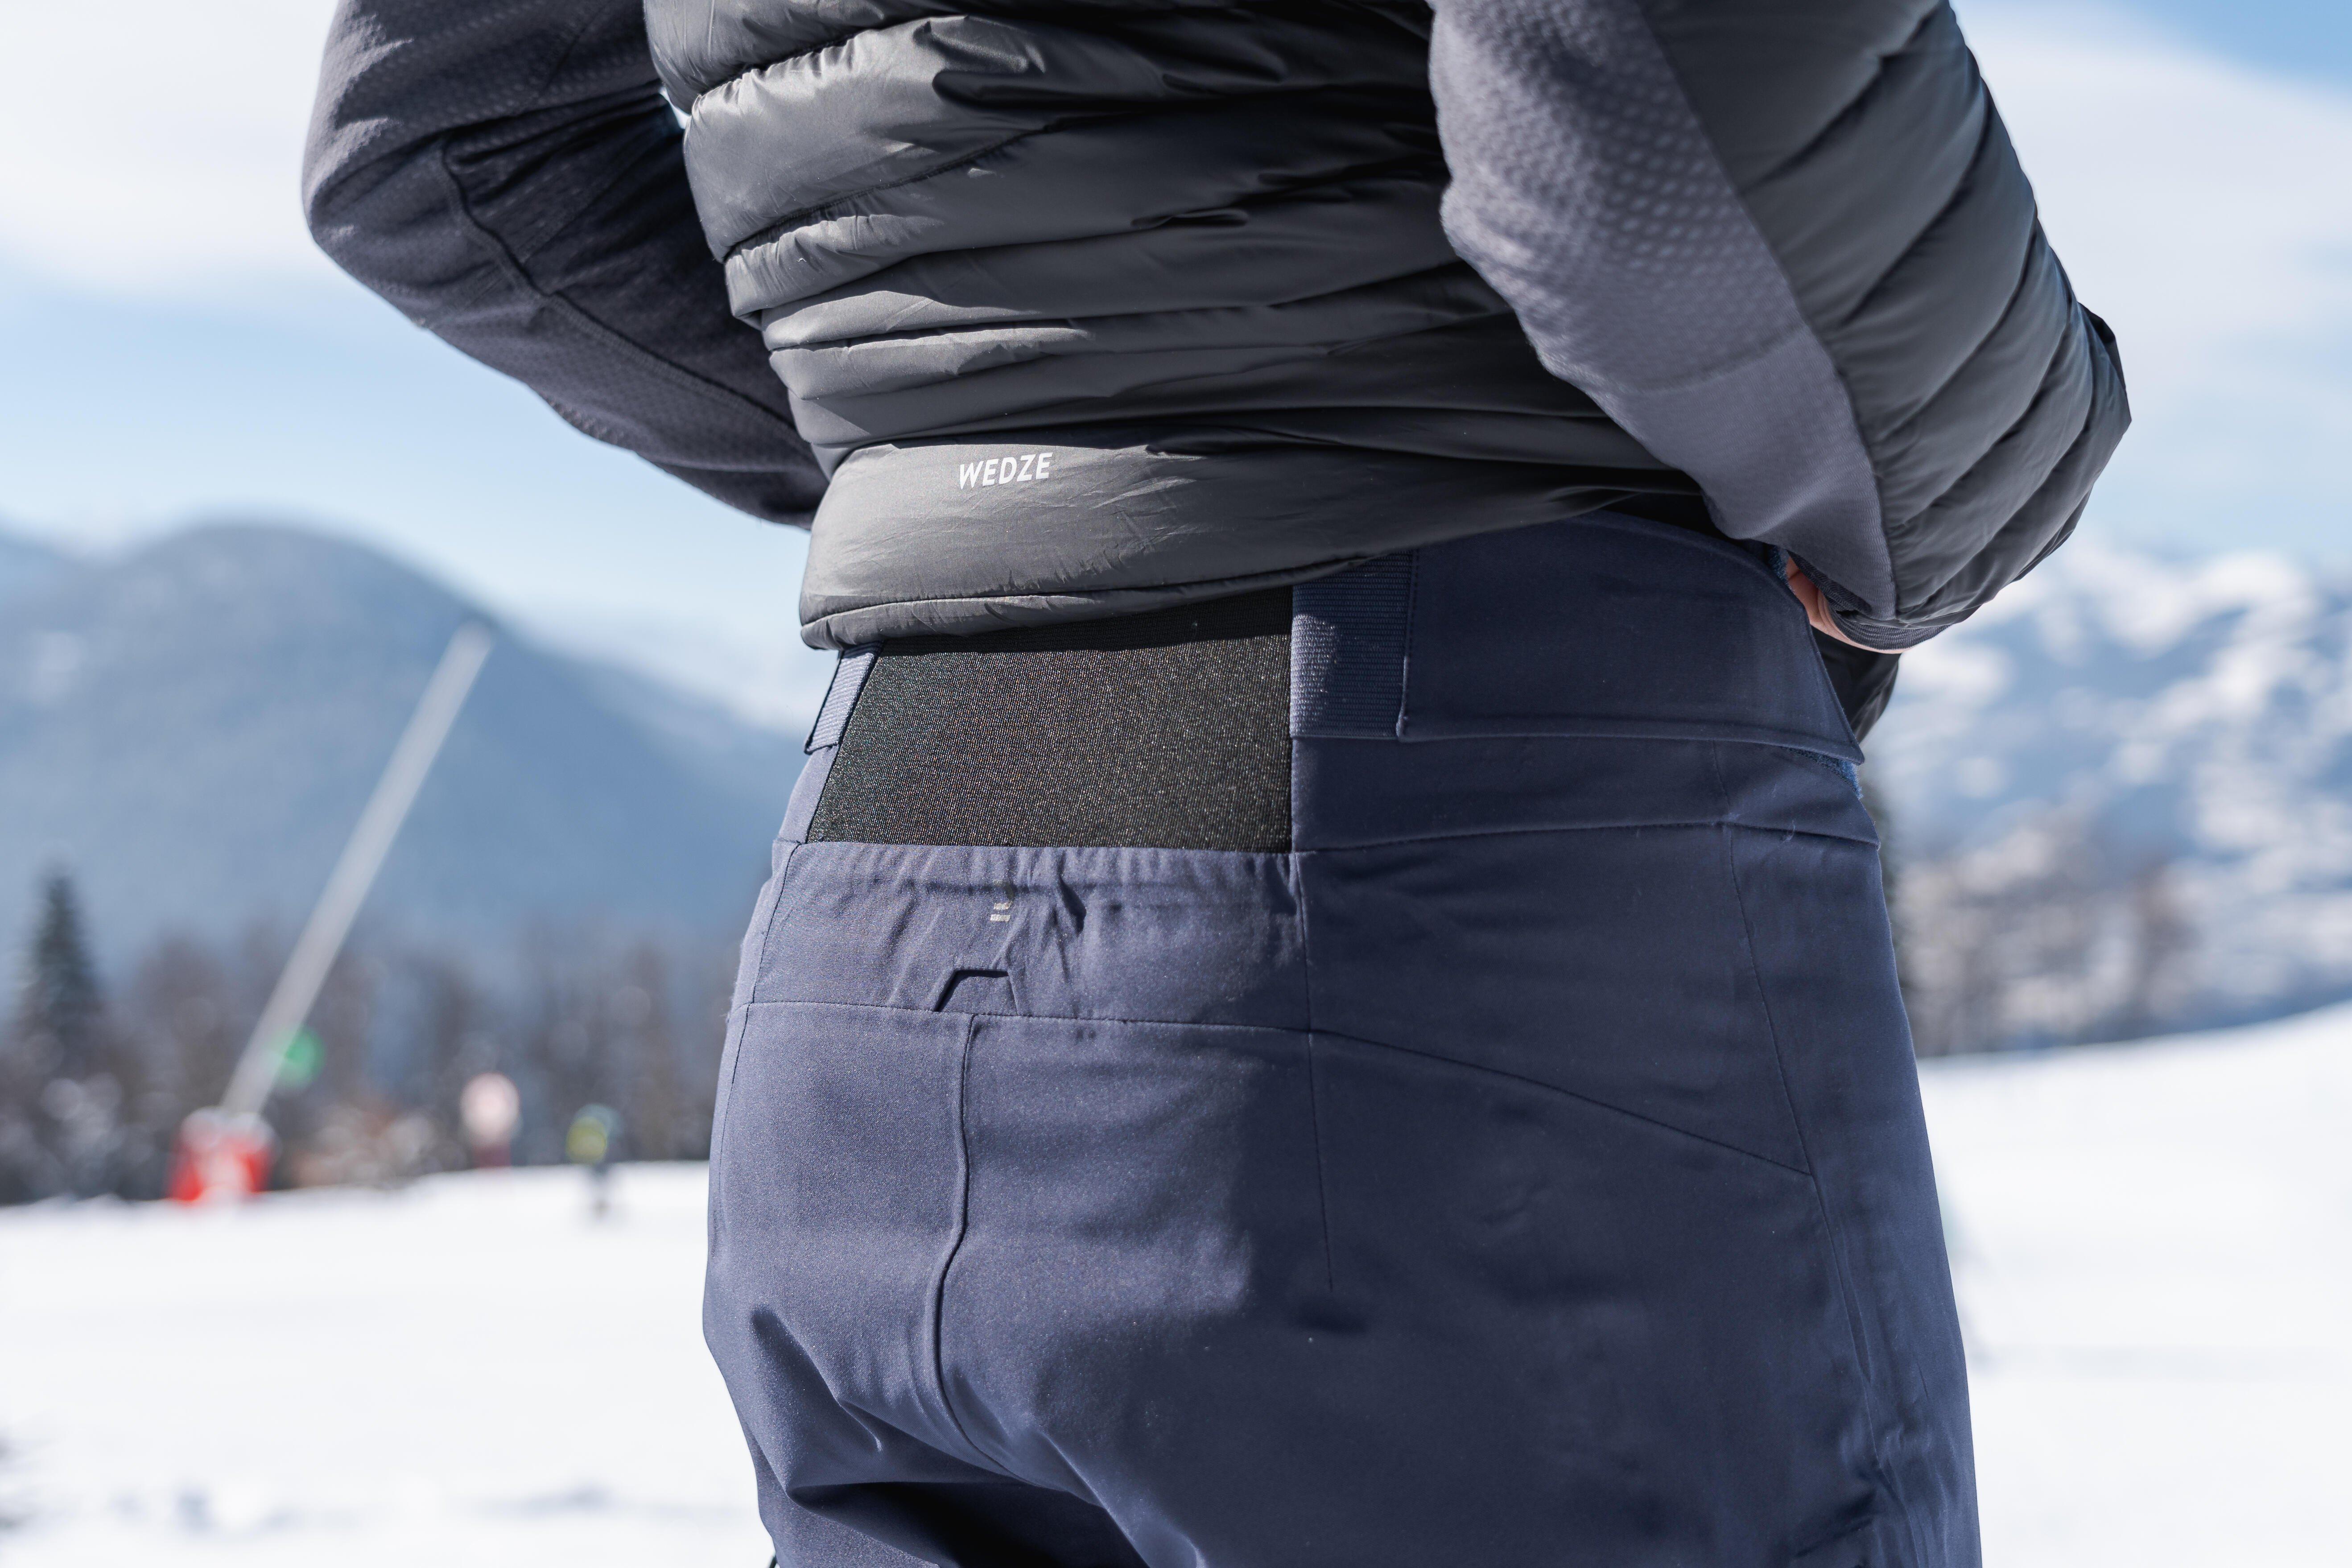 WEDZE  Pantalon de ski - FR500 